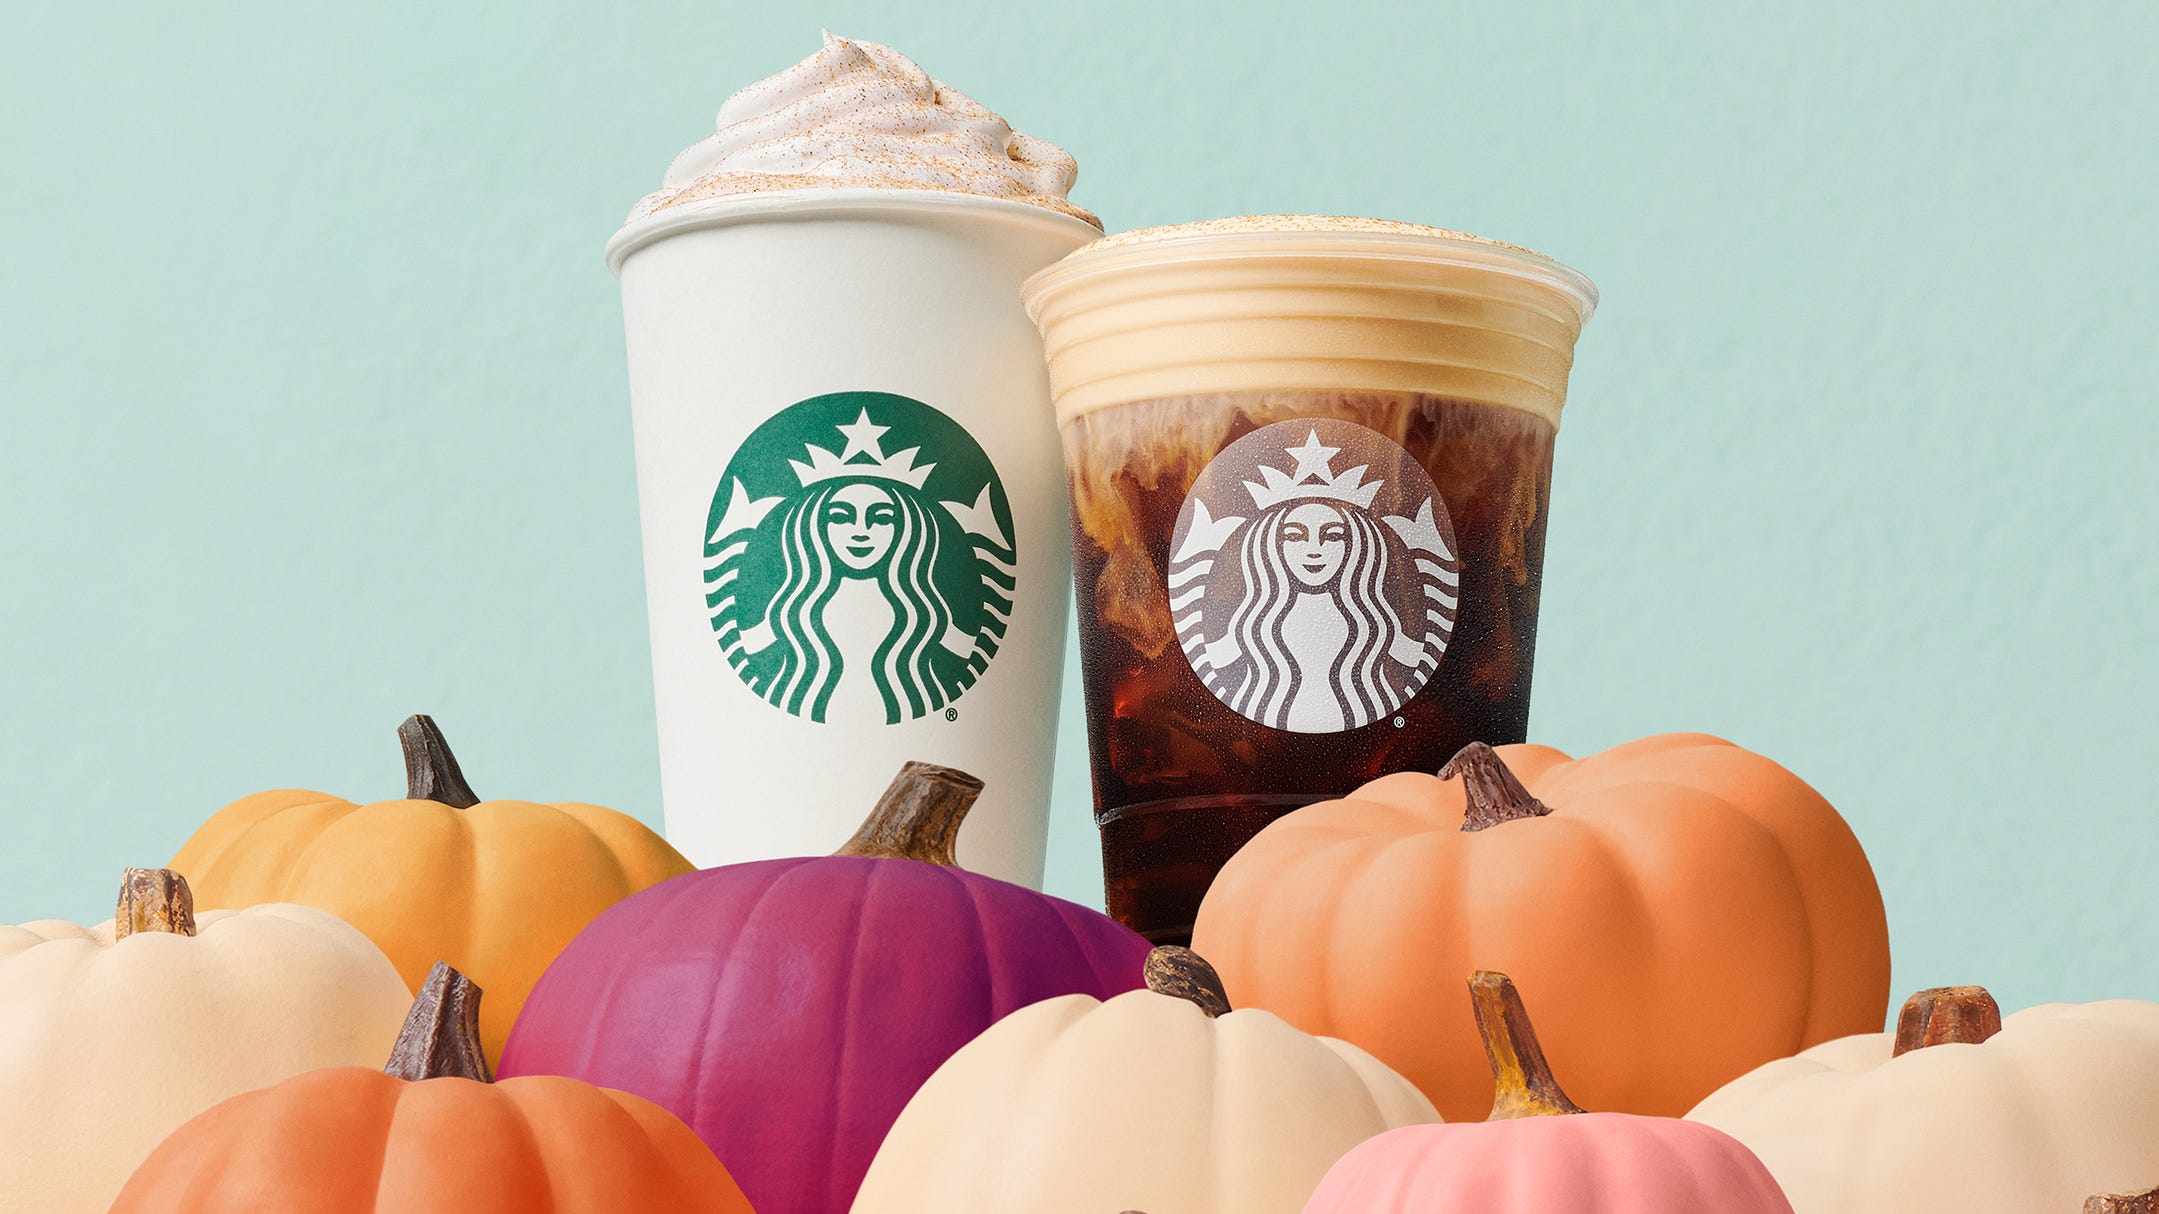 Starbucks Pumpkin Spice Latte returns along with fall bakery menu